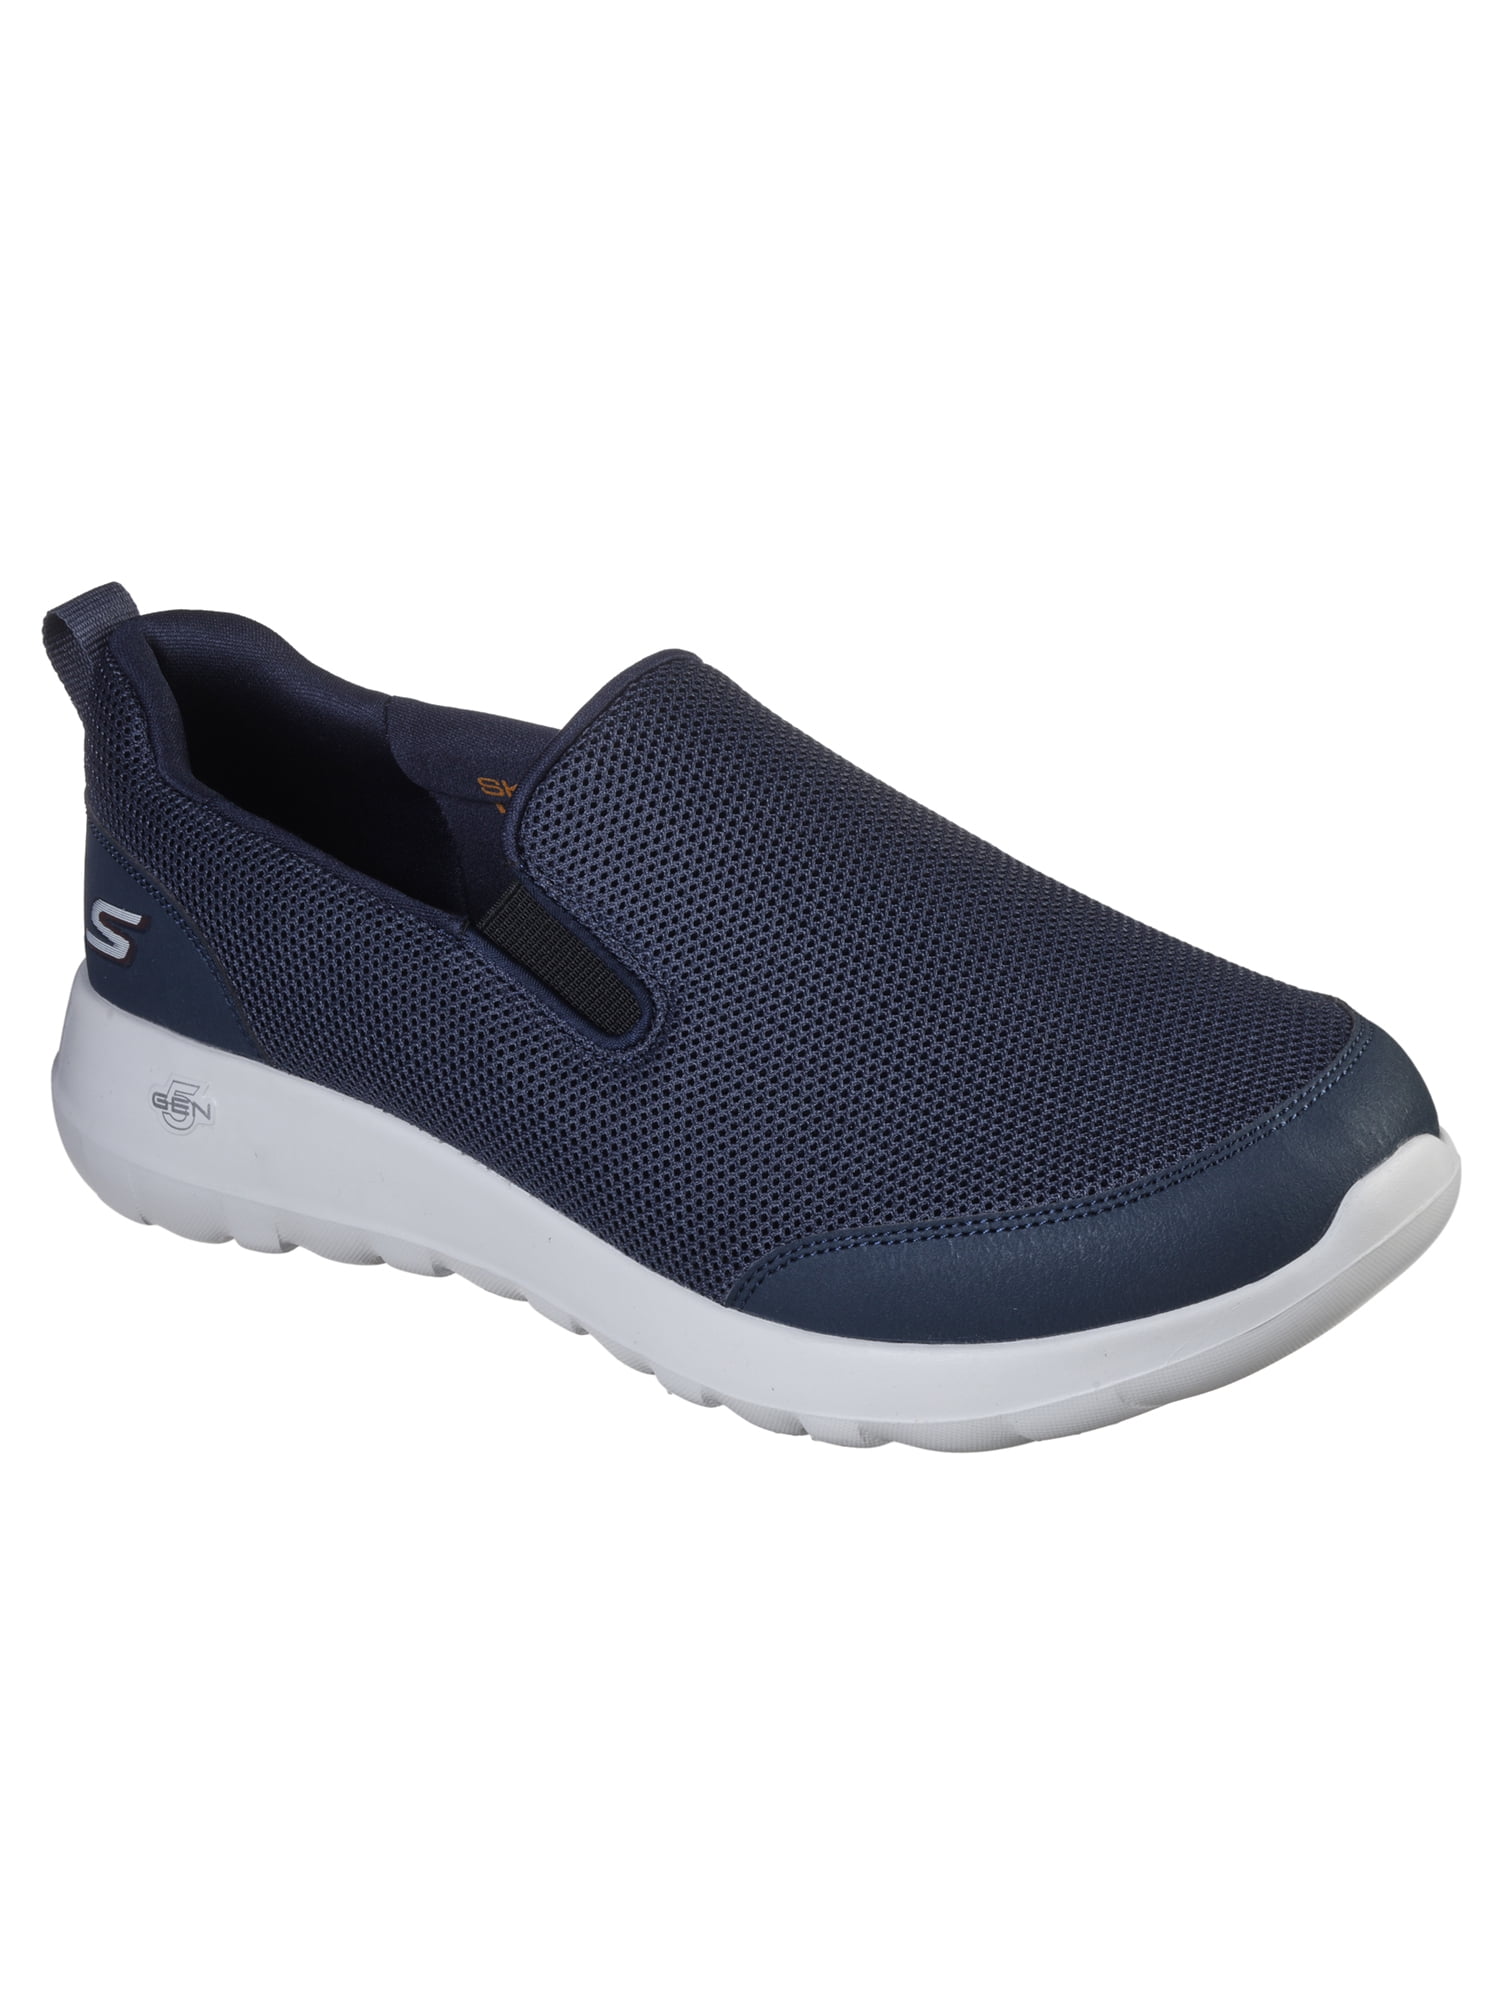 Skechers Men's Go Walk Max Slip-on Comfort Sneaker (Wide Available) - Walmart.com